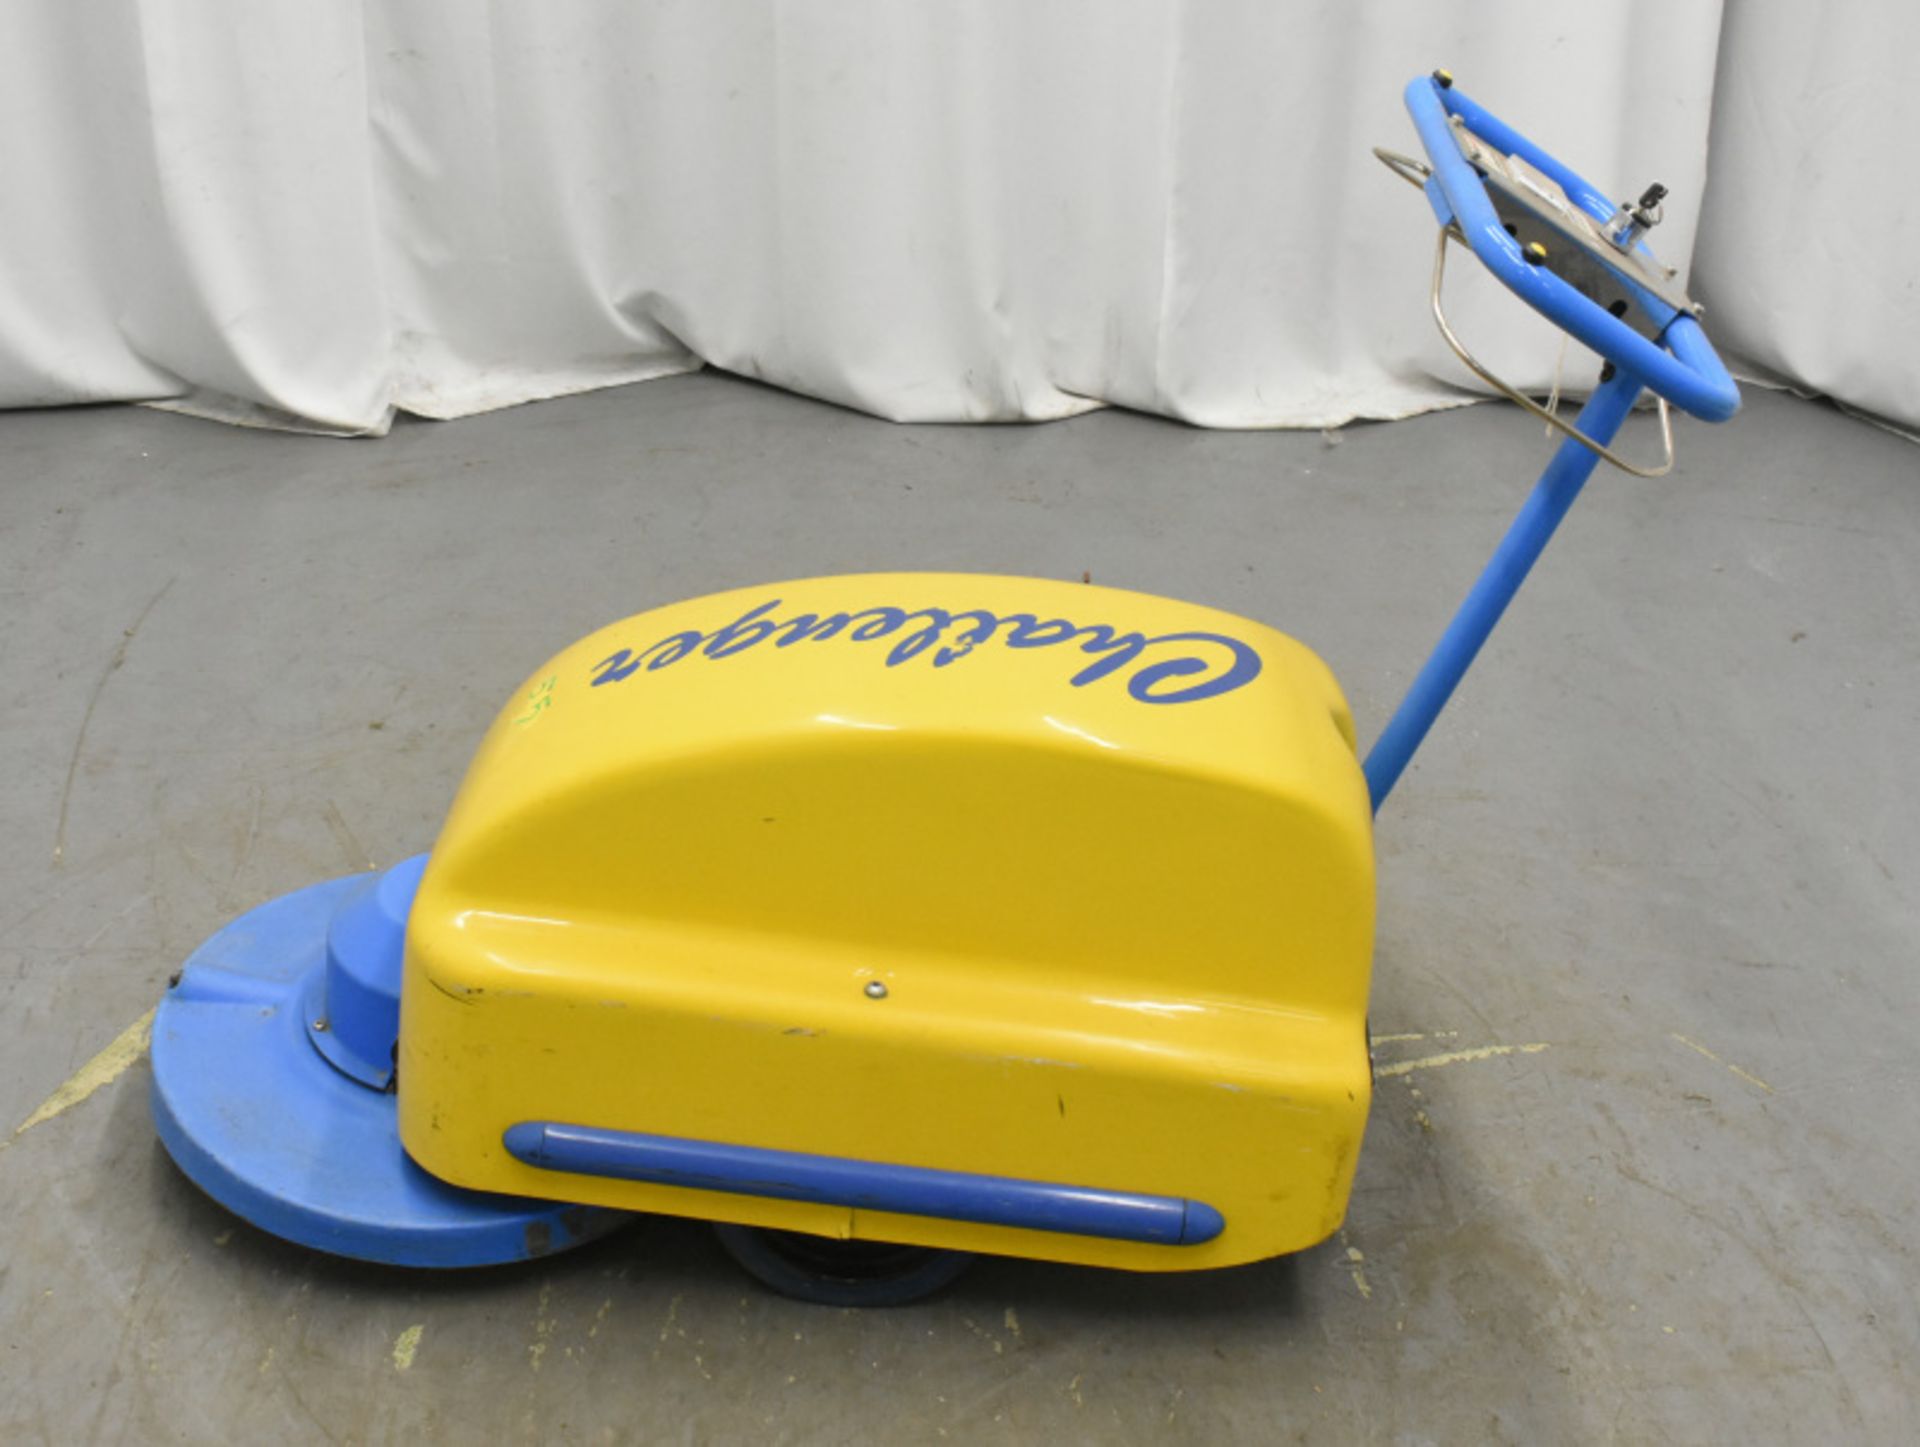 Tennant Challenger Nippy 500 Walk-Behind Floor Cleaner - Image 3 of 4